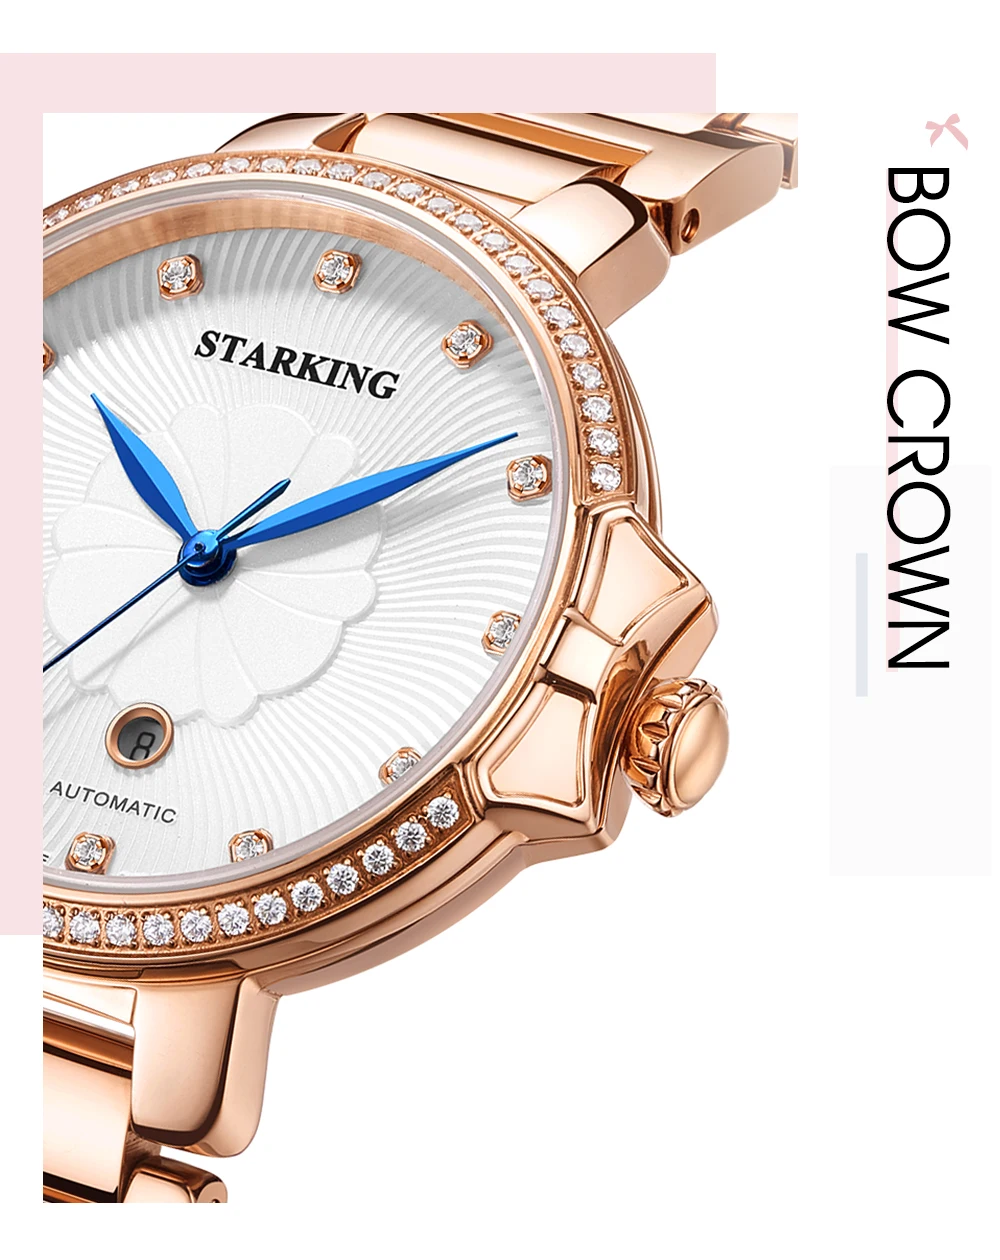 STARKING Роскошные ювелирные изделия женские часы сапфировые водонепроницаемые 5ATM Japan miyota movt автоматические механические наручные часы AL0267